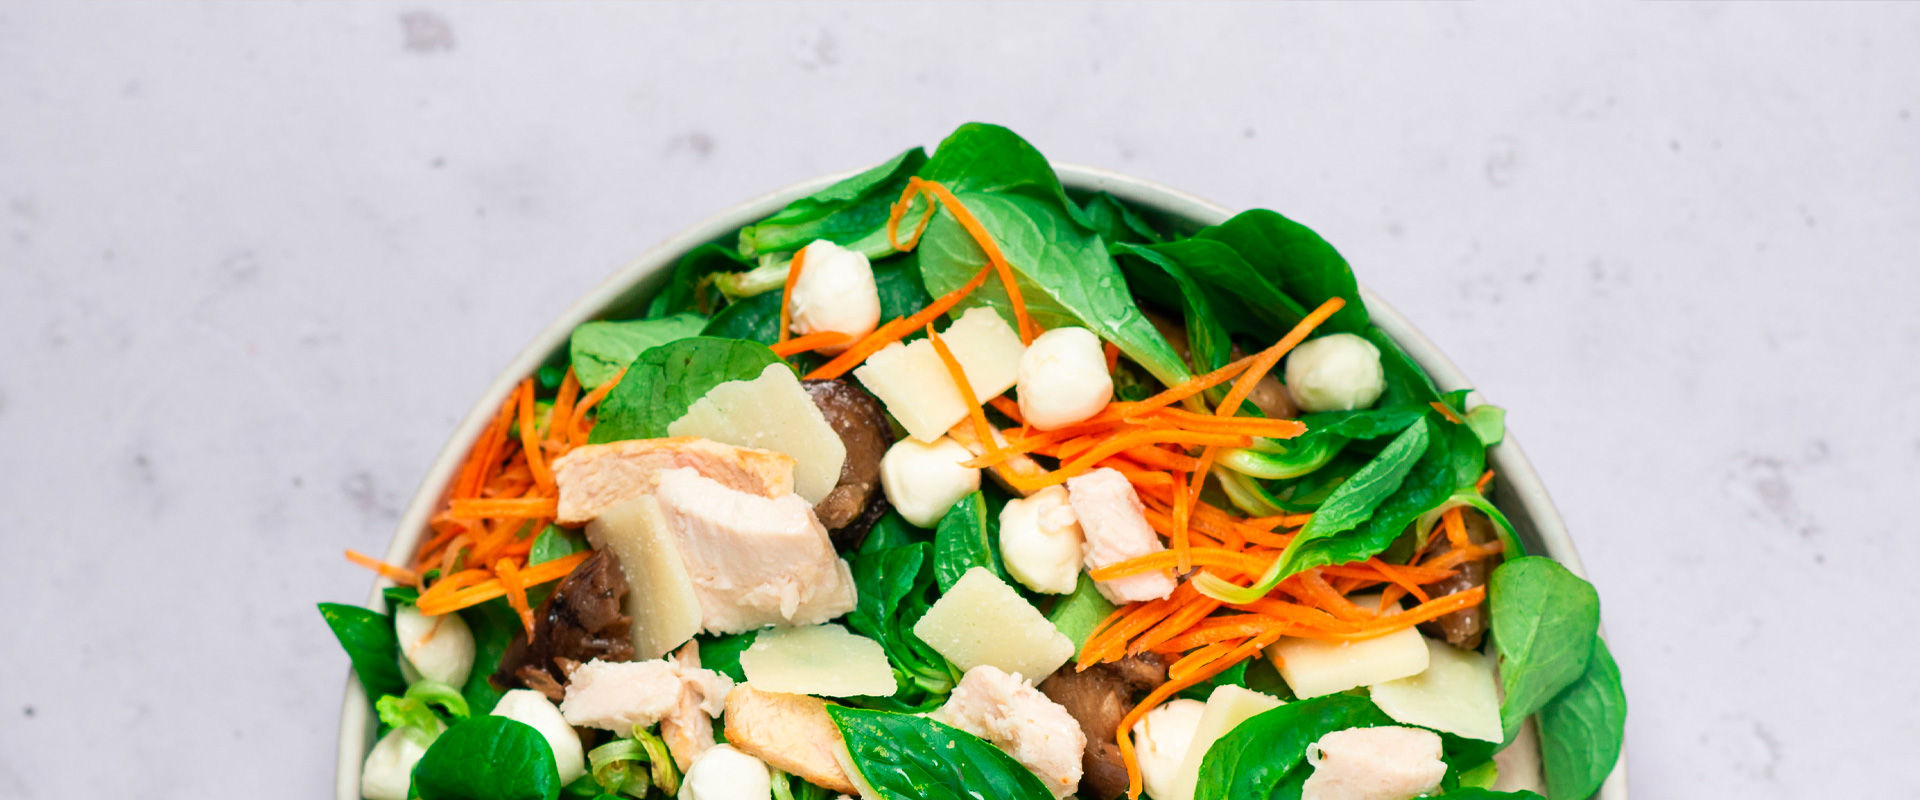 Ouvrir une franchise fast food de salade : pourquoi choisir Eat Salad ?